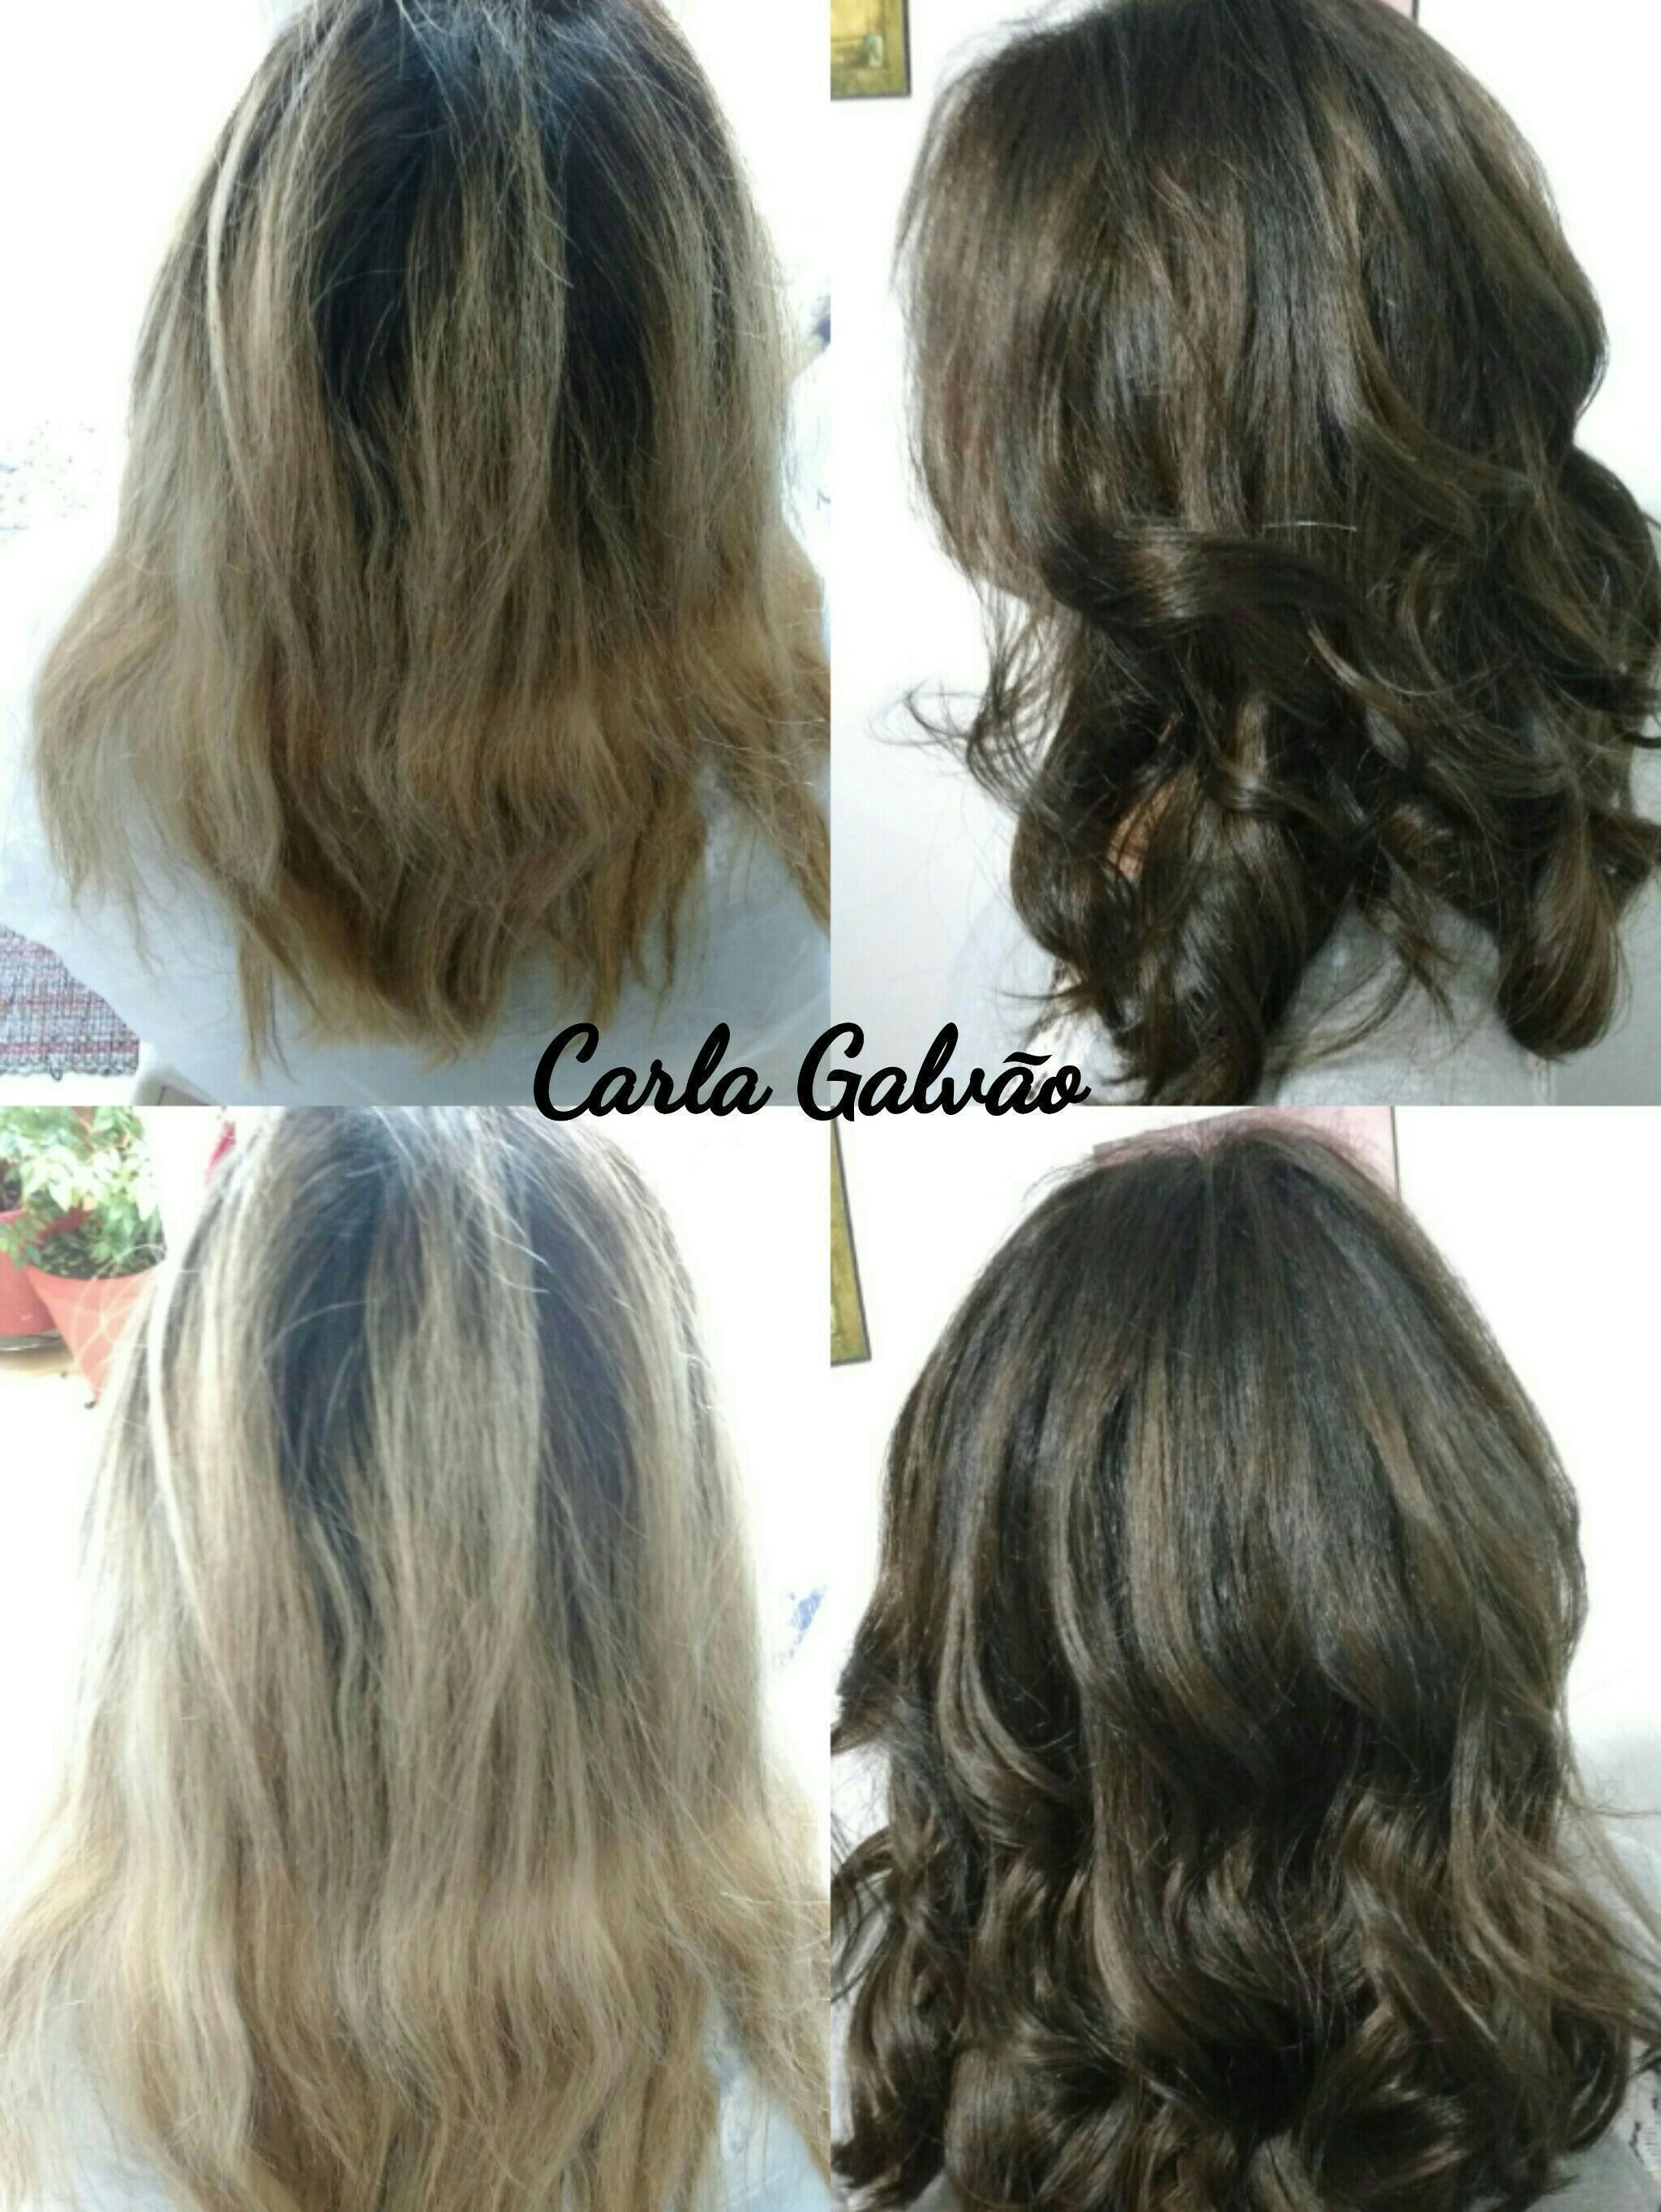 #coloração#hidratação#corte#escova
By Carla Galvão cabelo cabeleireiro(a) maquiador(a)